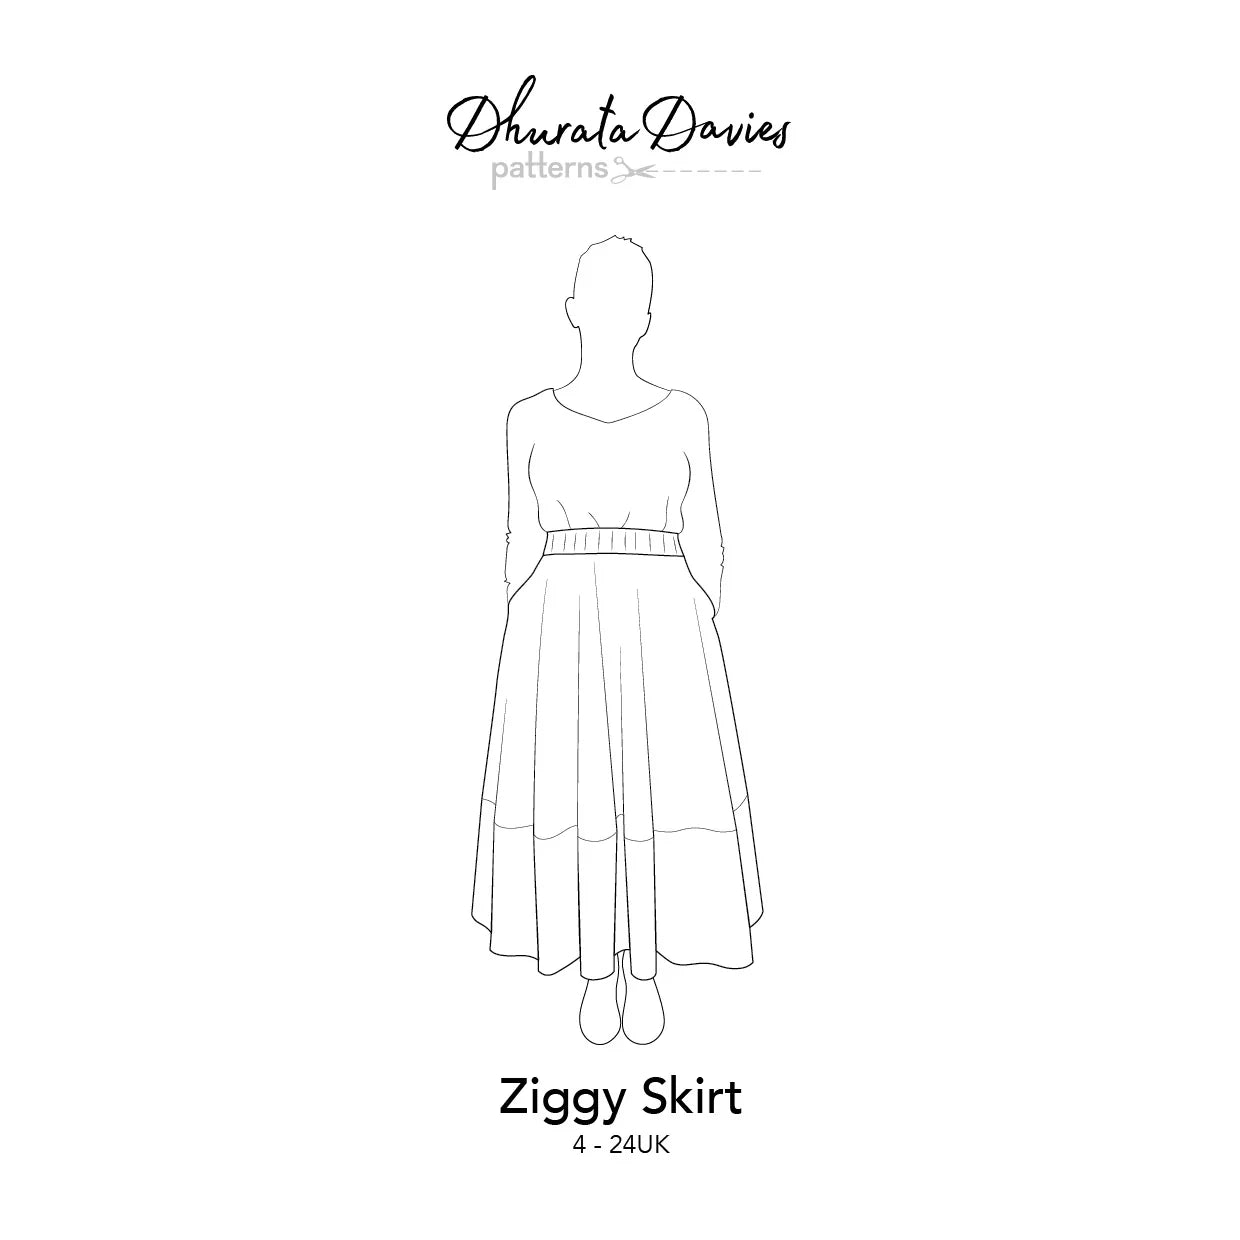 Dhurata Davies Patterns Ziggy Skirt